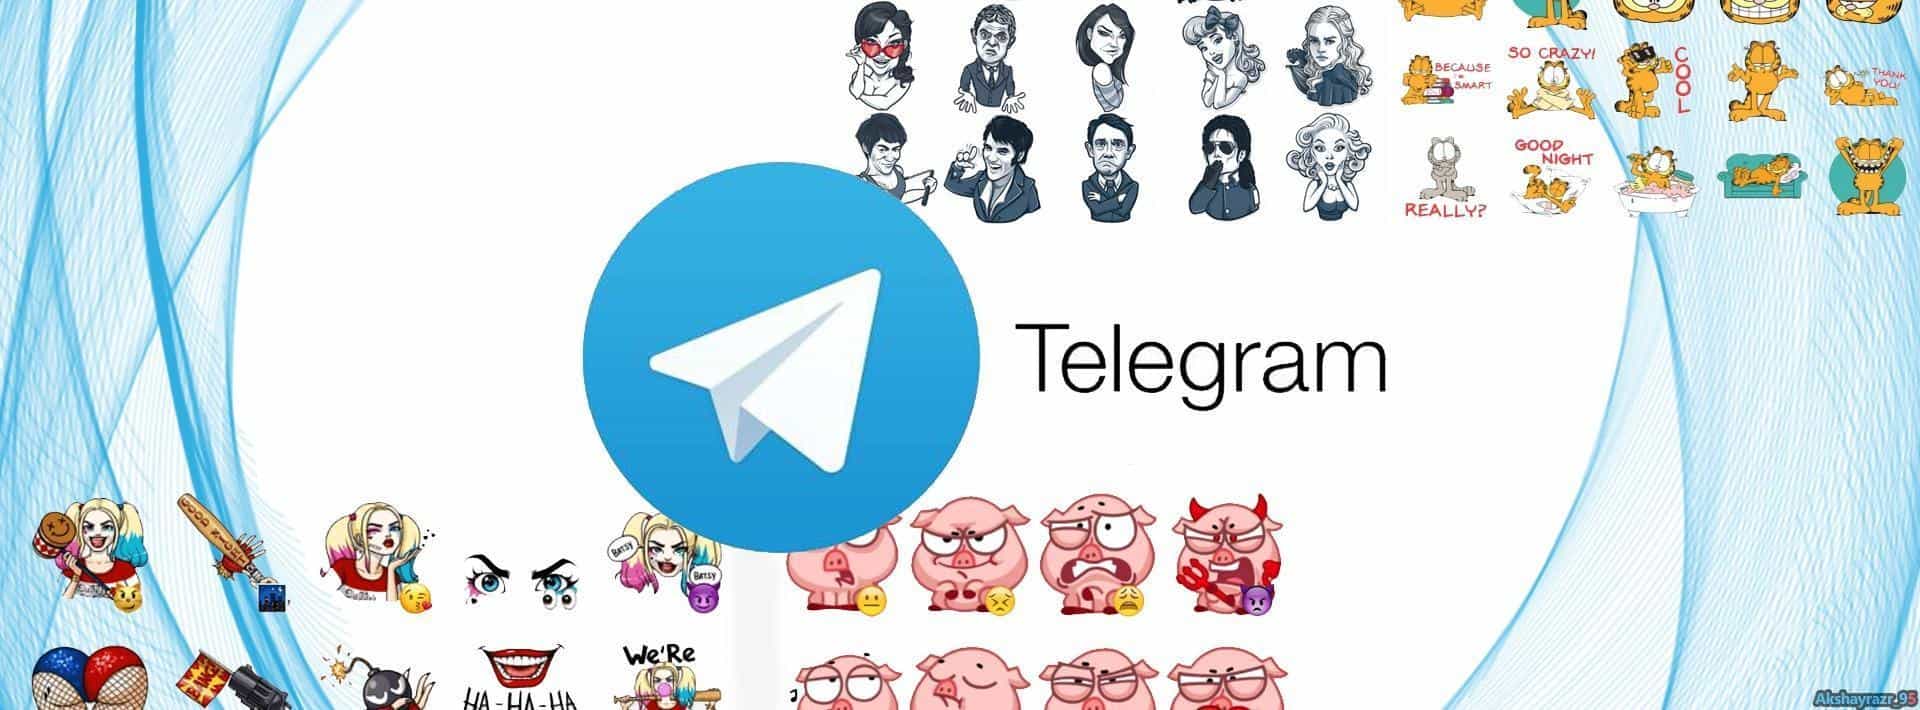 Telegram New sticker update download